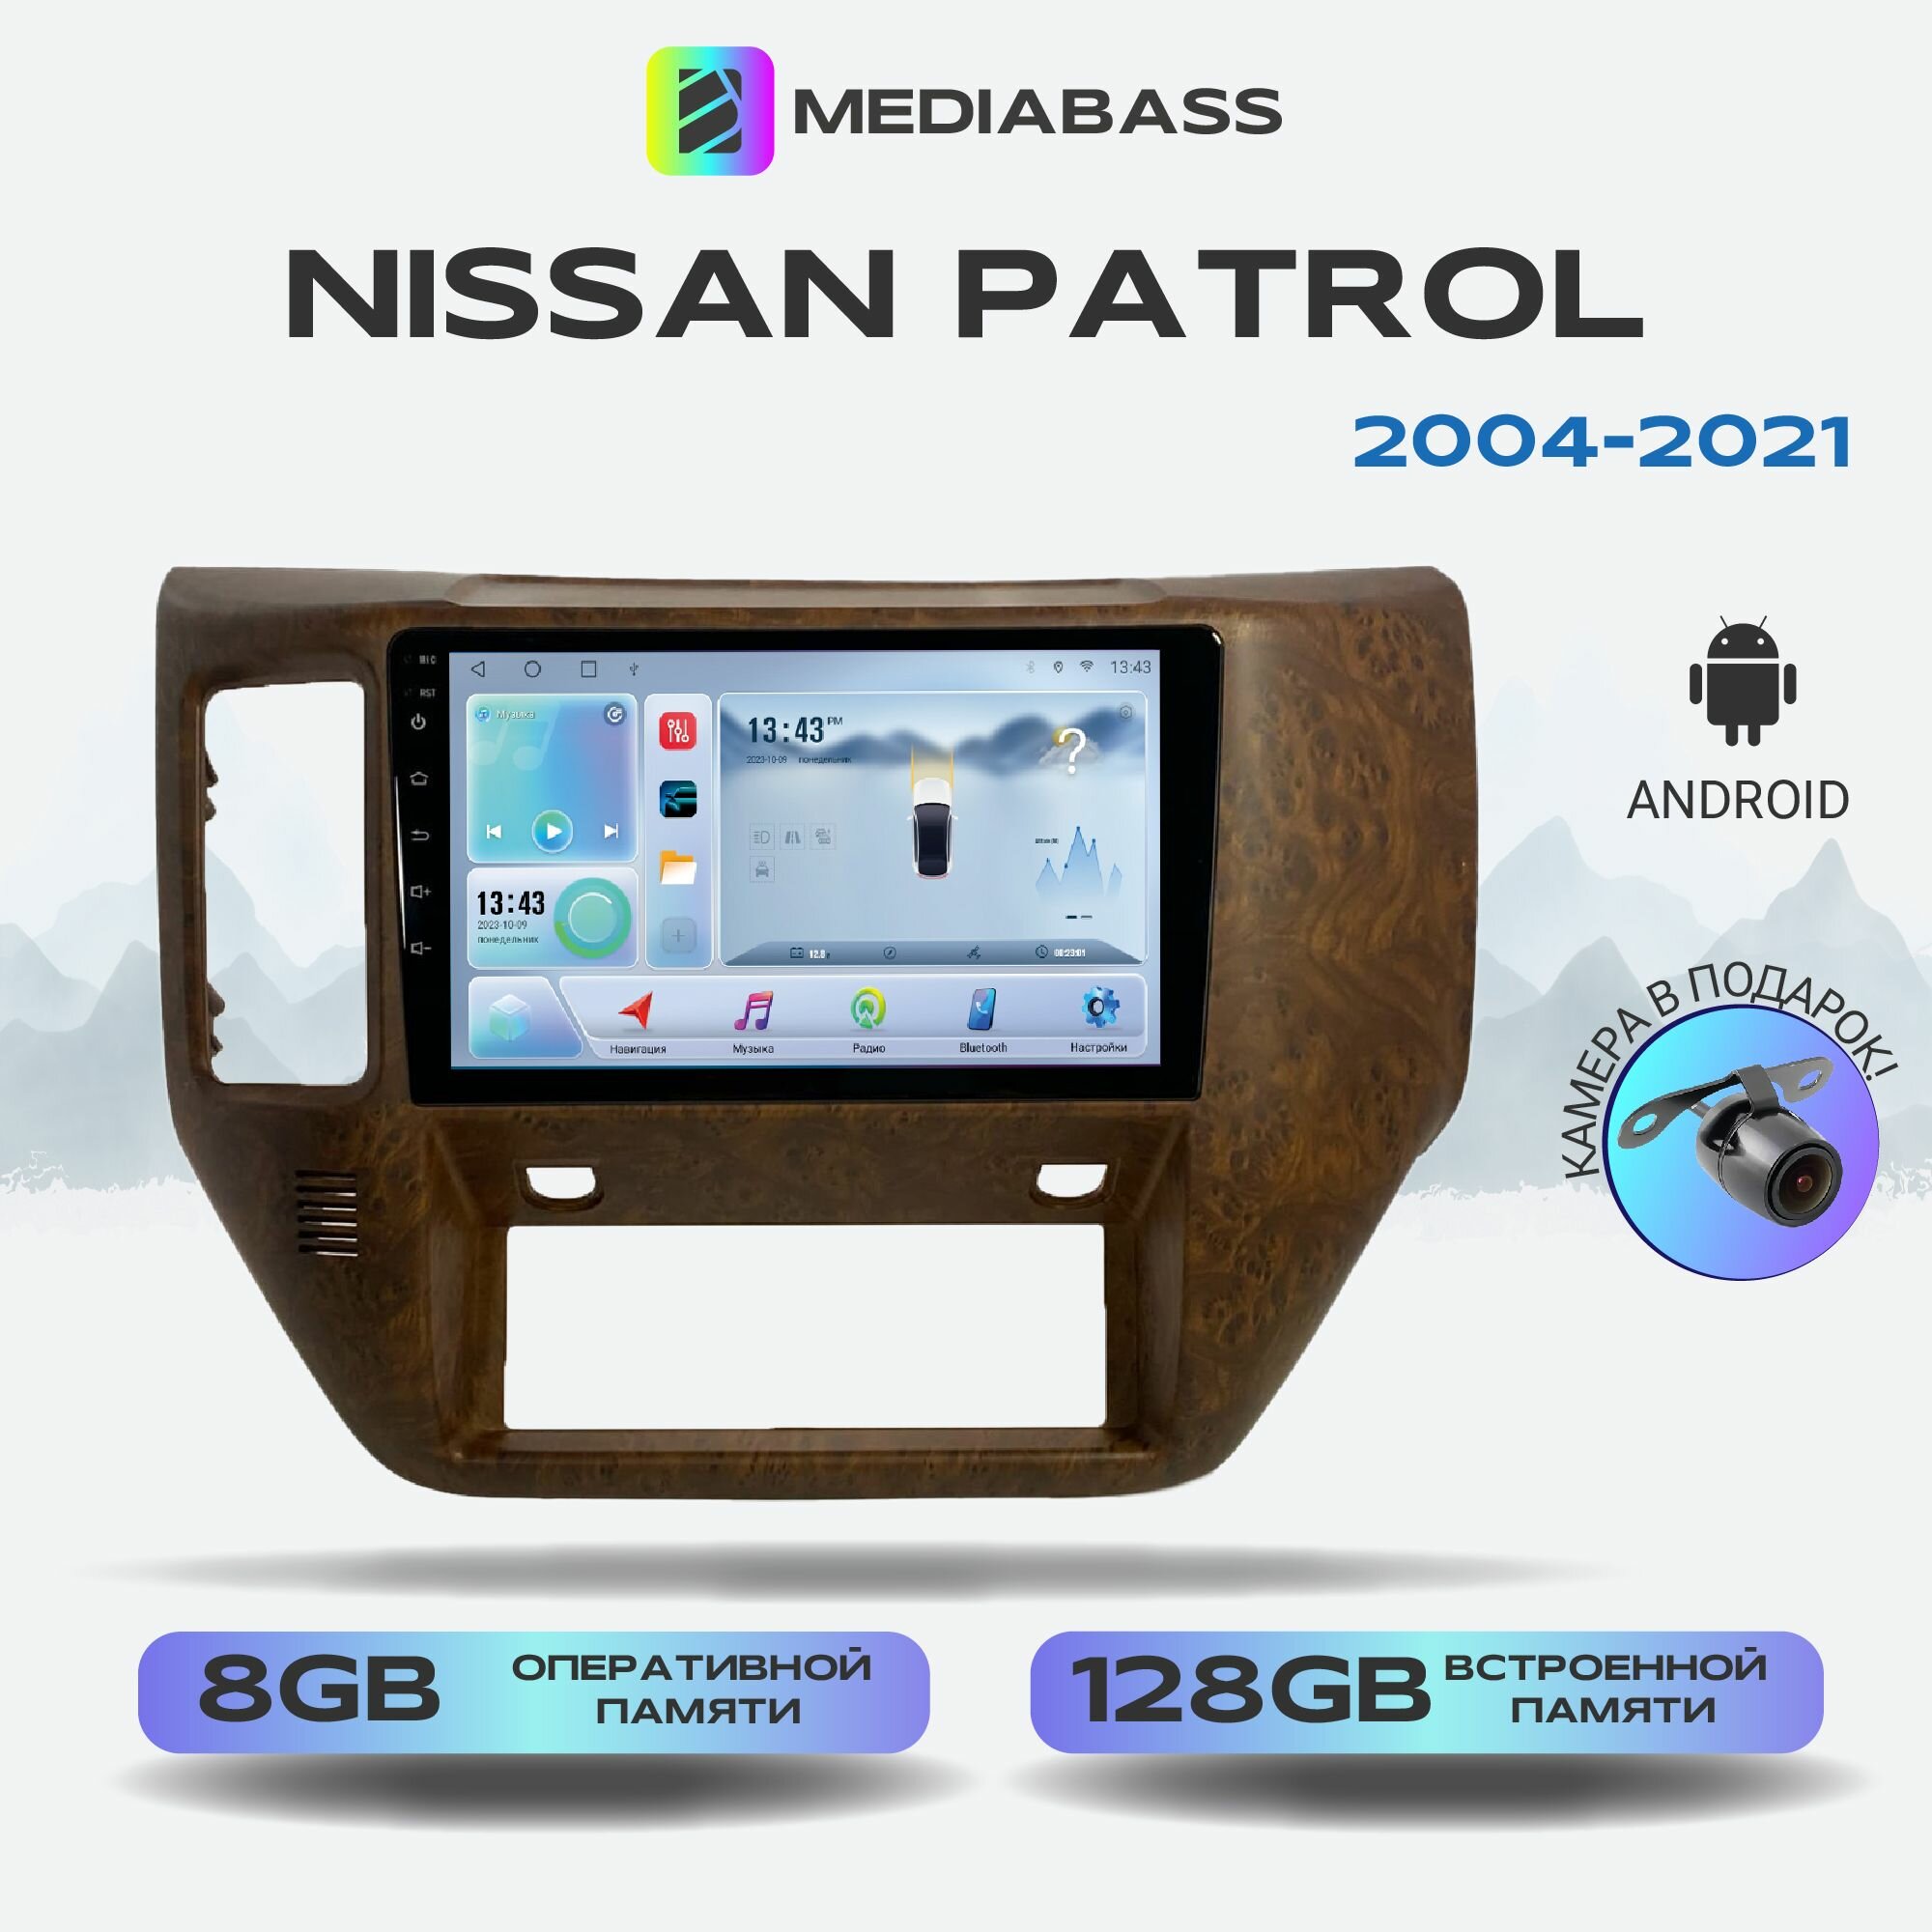 Автомагнитола Mediabass Nissan Patrol 2004-2021, Android 12, 8/128ГБ, 8-ядерный процессор, DSP, 4G модем, голосовое управление, чип-усилитель TDA7851, 4G LTE / Ниссан Патрол